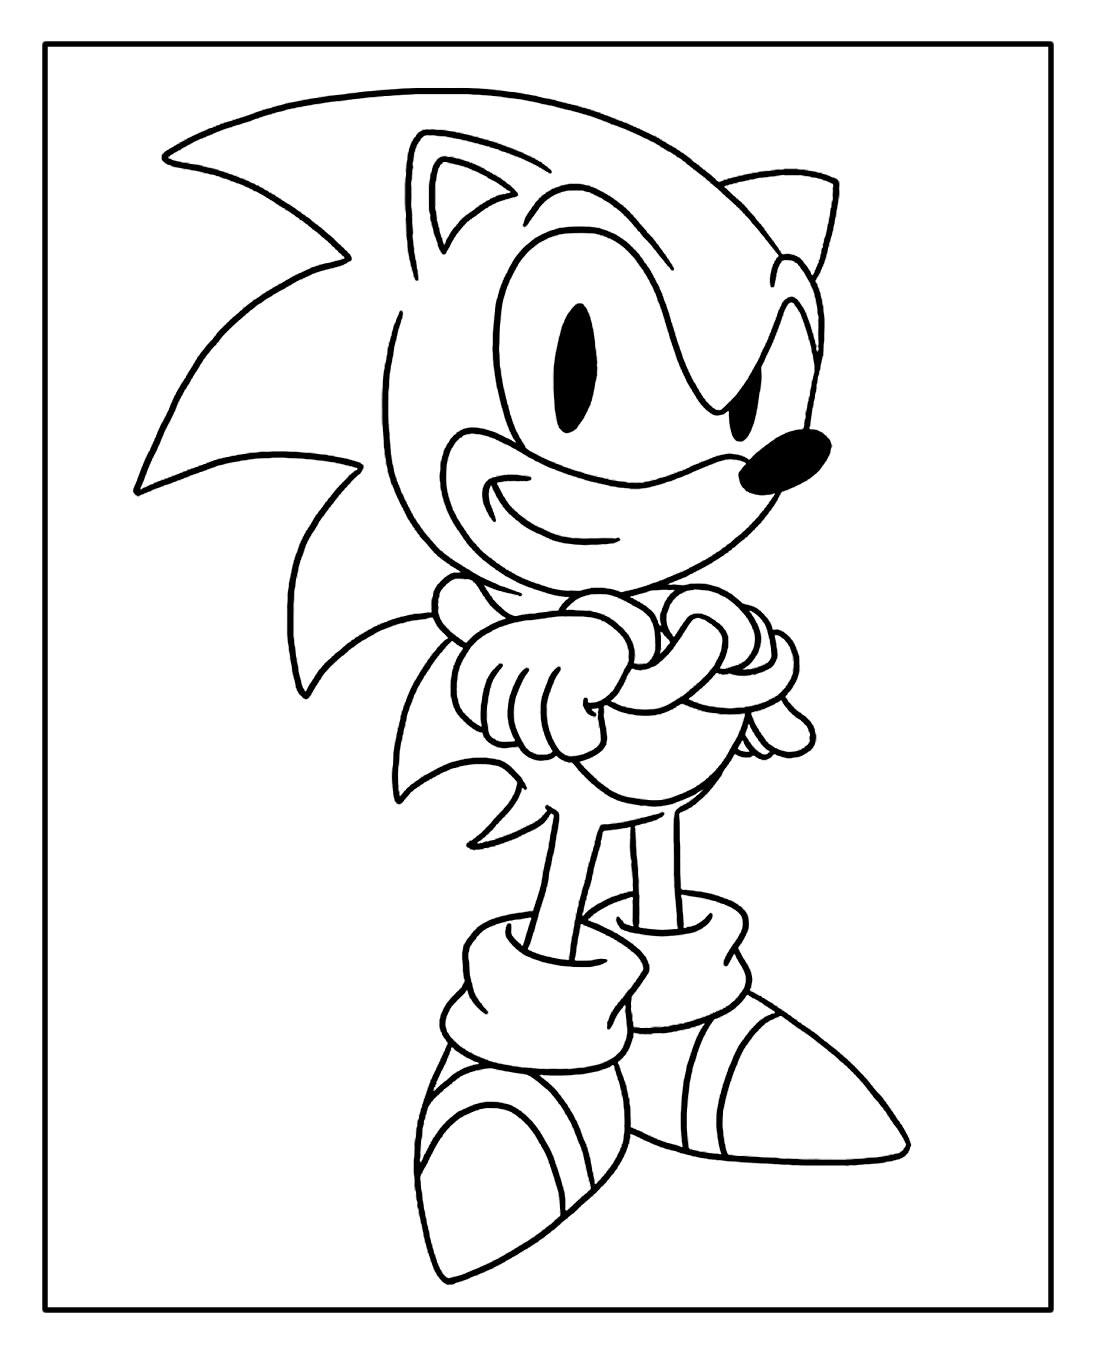 Página para colorir do Sonic